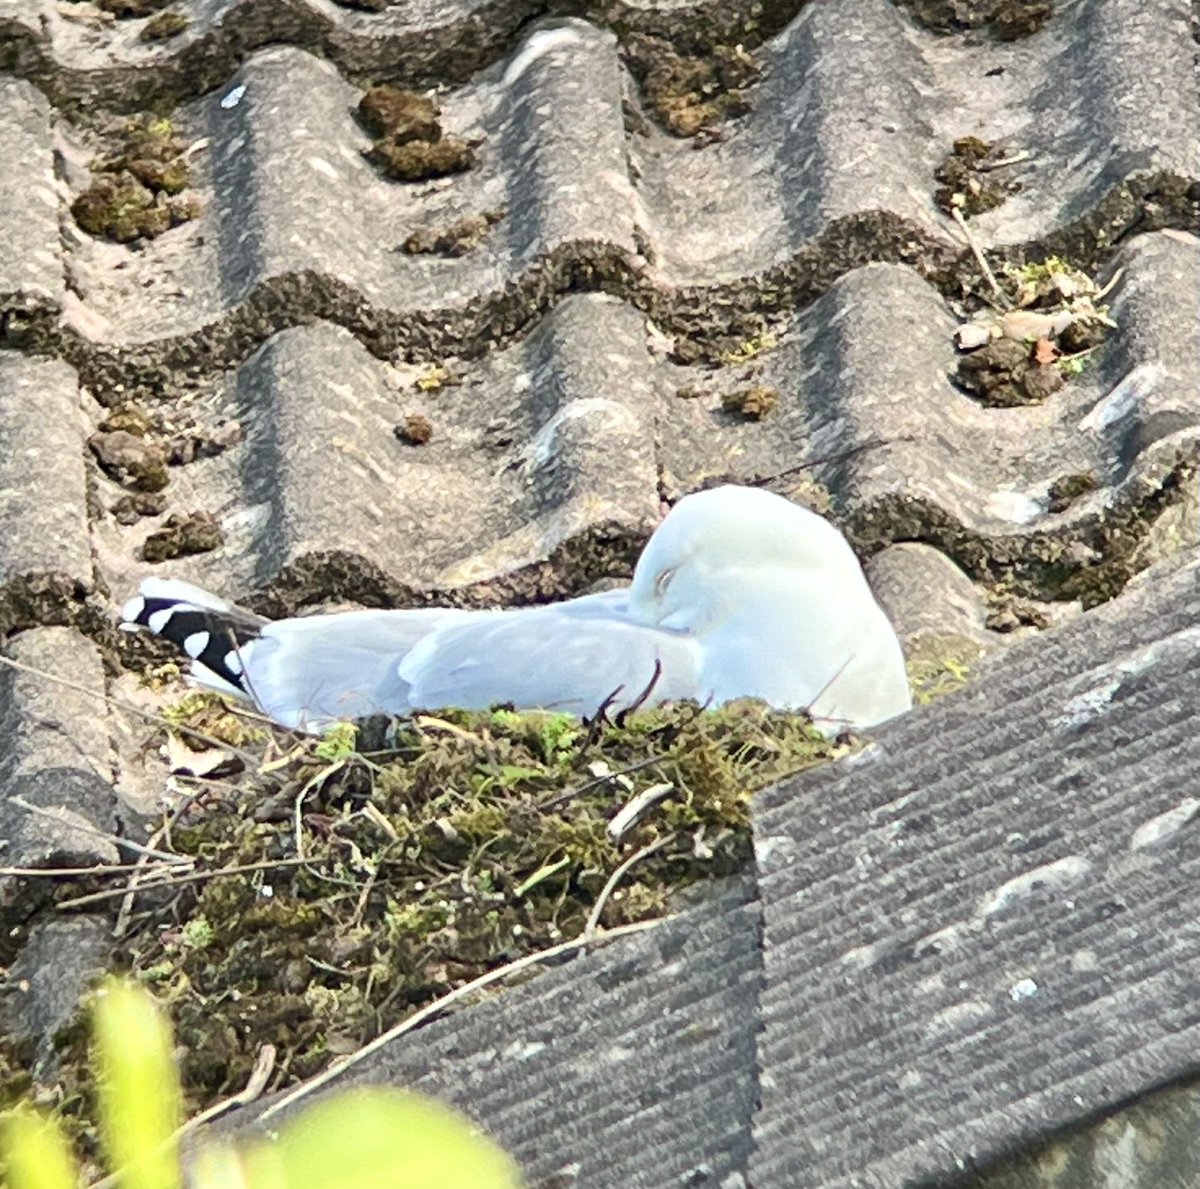 Herring Gull nesting opposite our home. Will be interesting to observe. ⁦@DorsetBirdClub⁩ ⁦@harbourbirds⁩